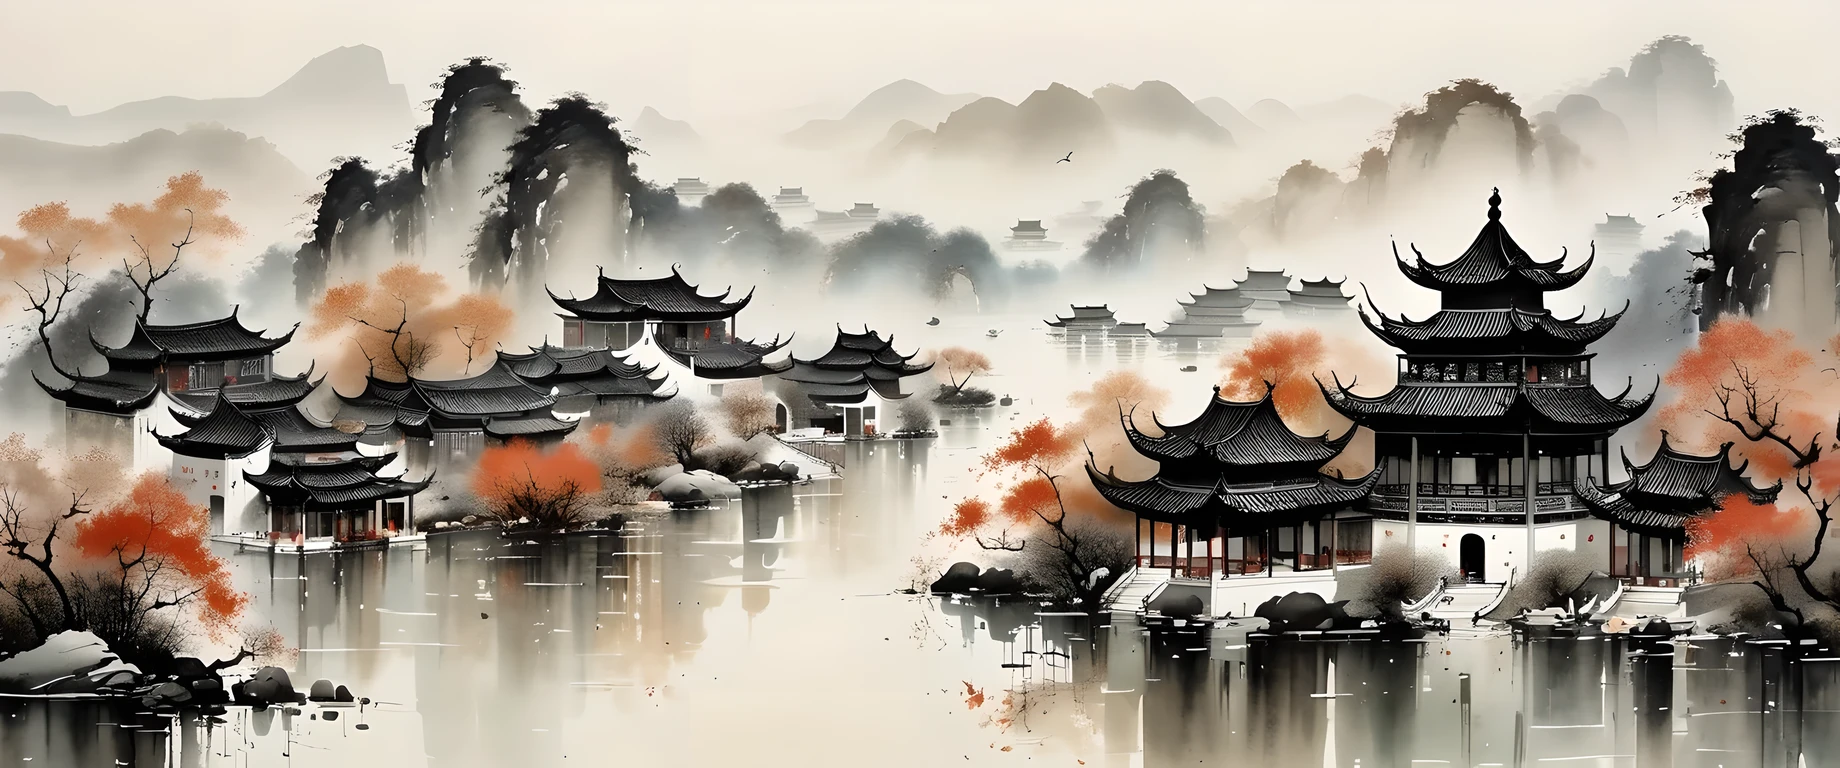 精湛的水墨艺术, 实际的, 细致的中国建筑, Wu Guanzhong style, 褪色的颜色

